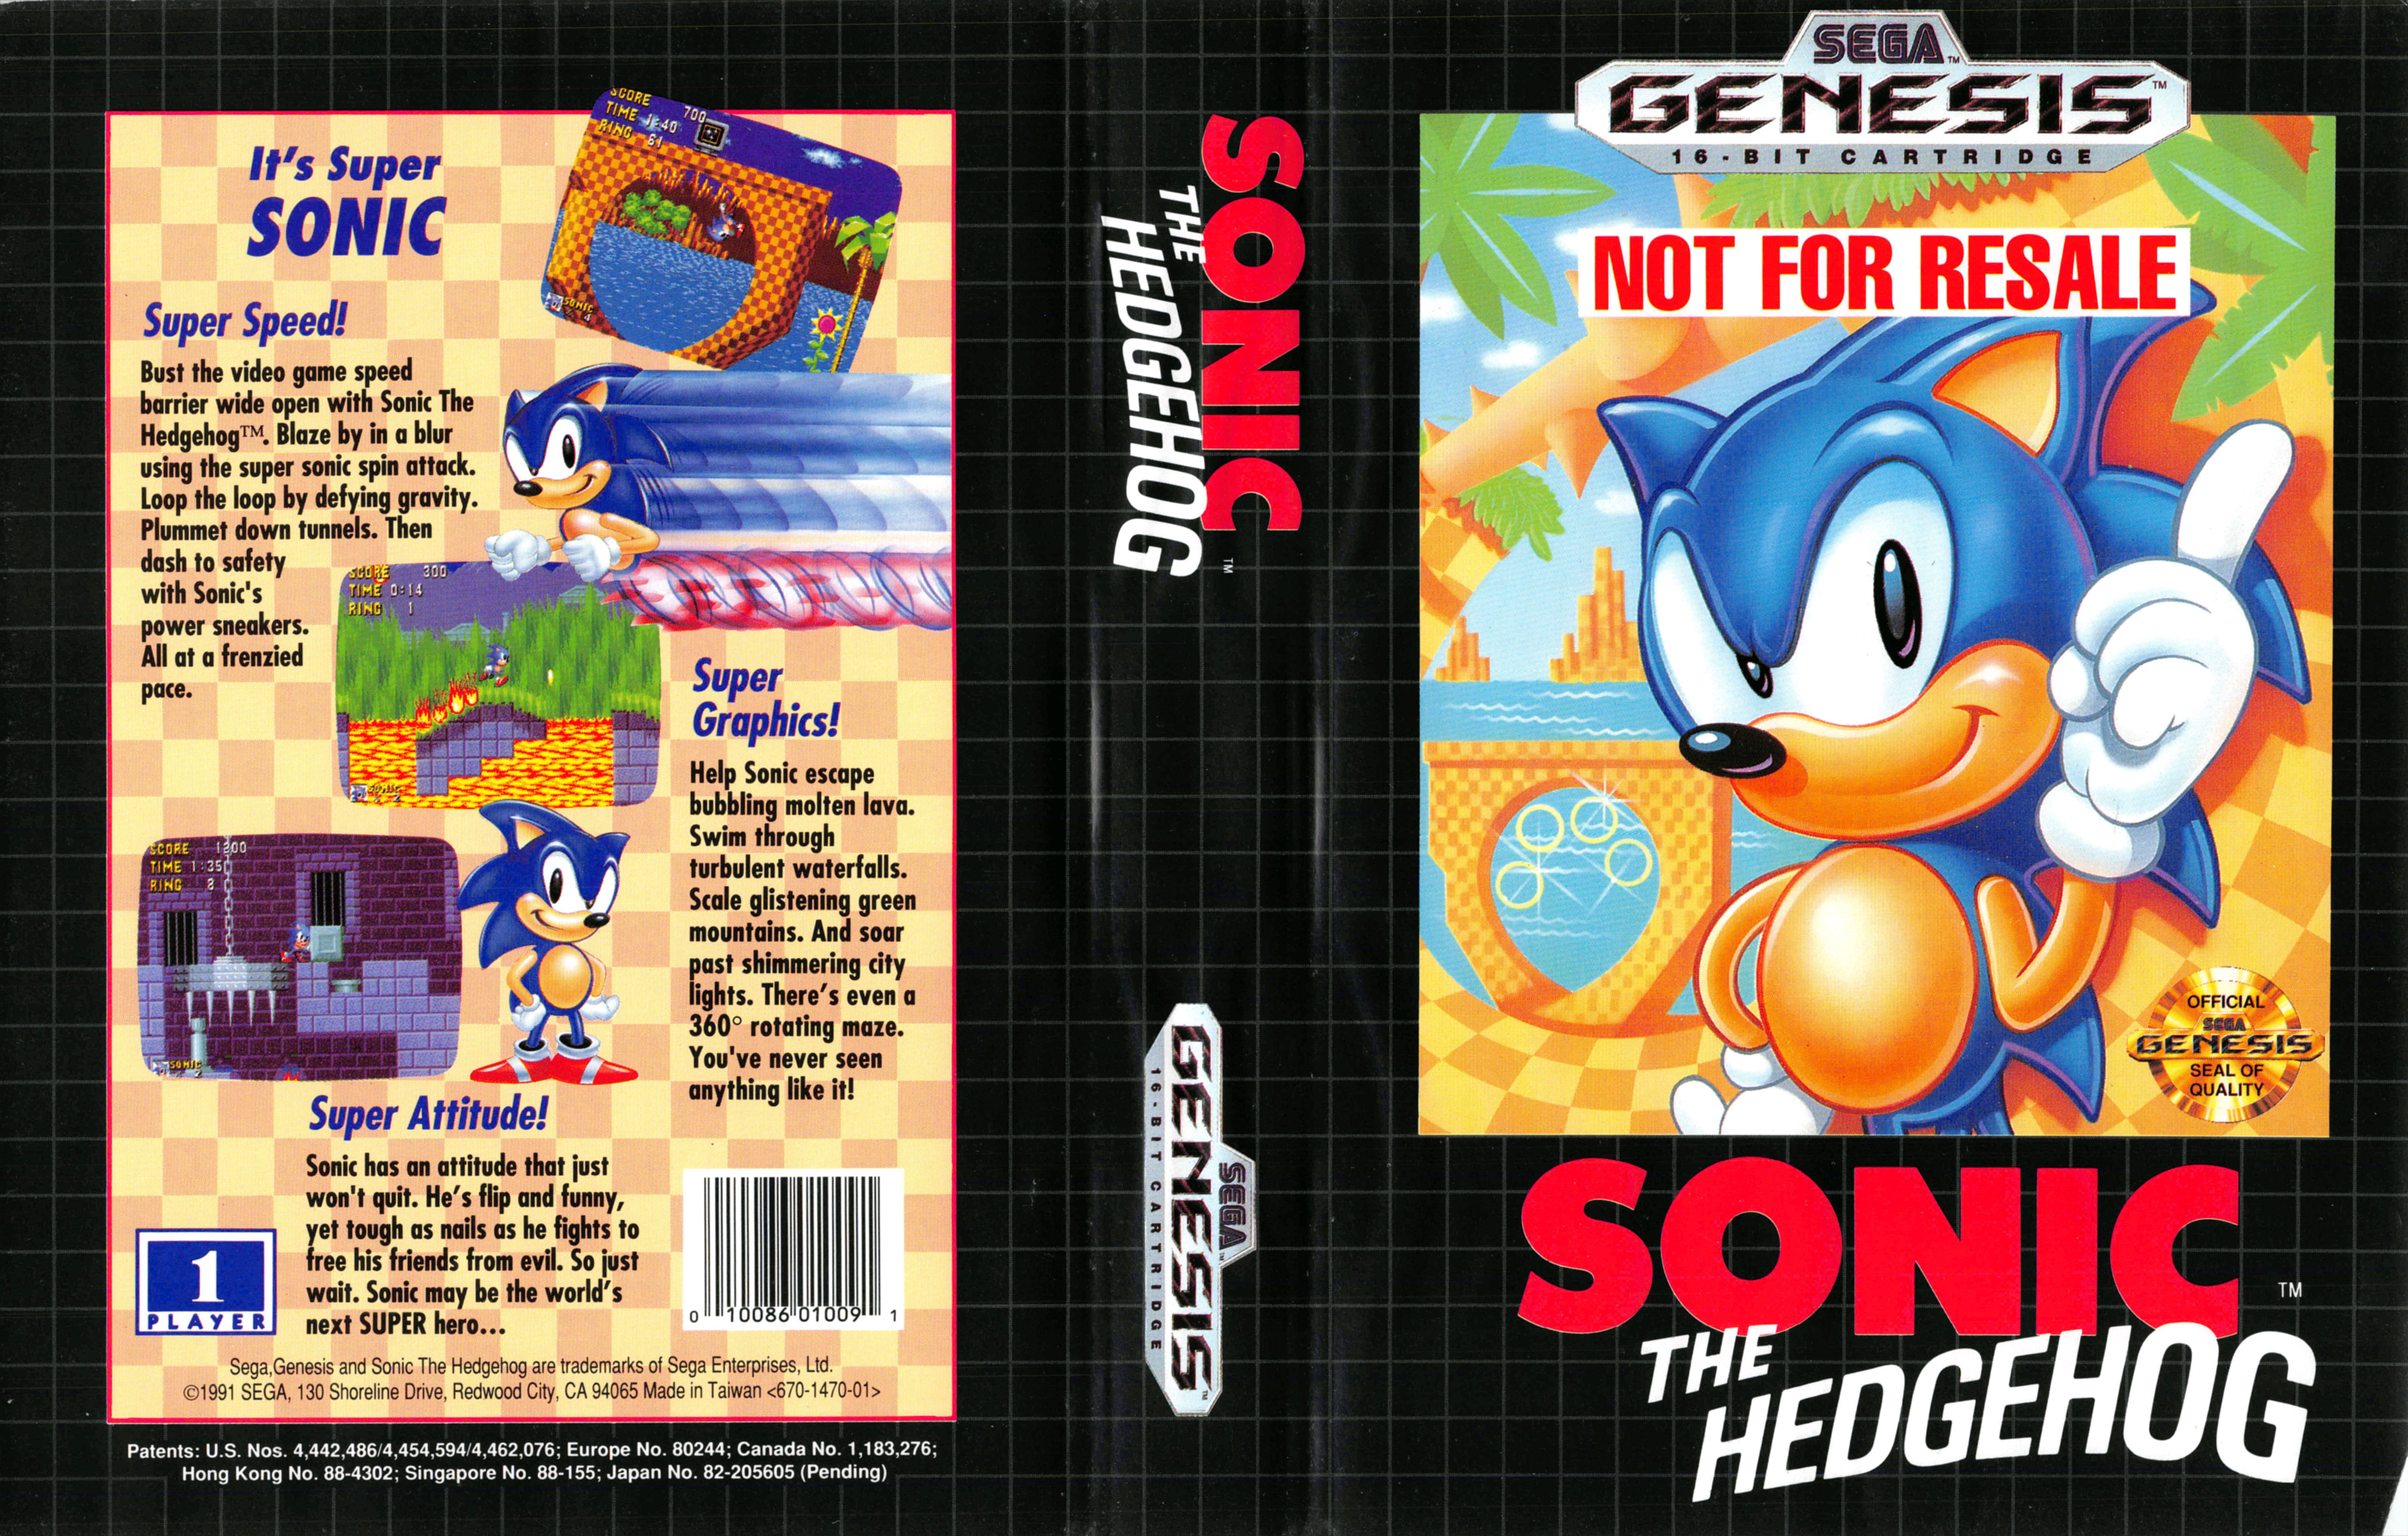 Игра мега соник. Sonic the Hedgehog первая игра. Соник игра сега. Sonic the Hedgehog 1991 Облокжа. Sonic the Hedgehog Sega Genesis обложка.